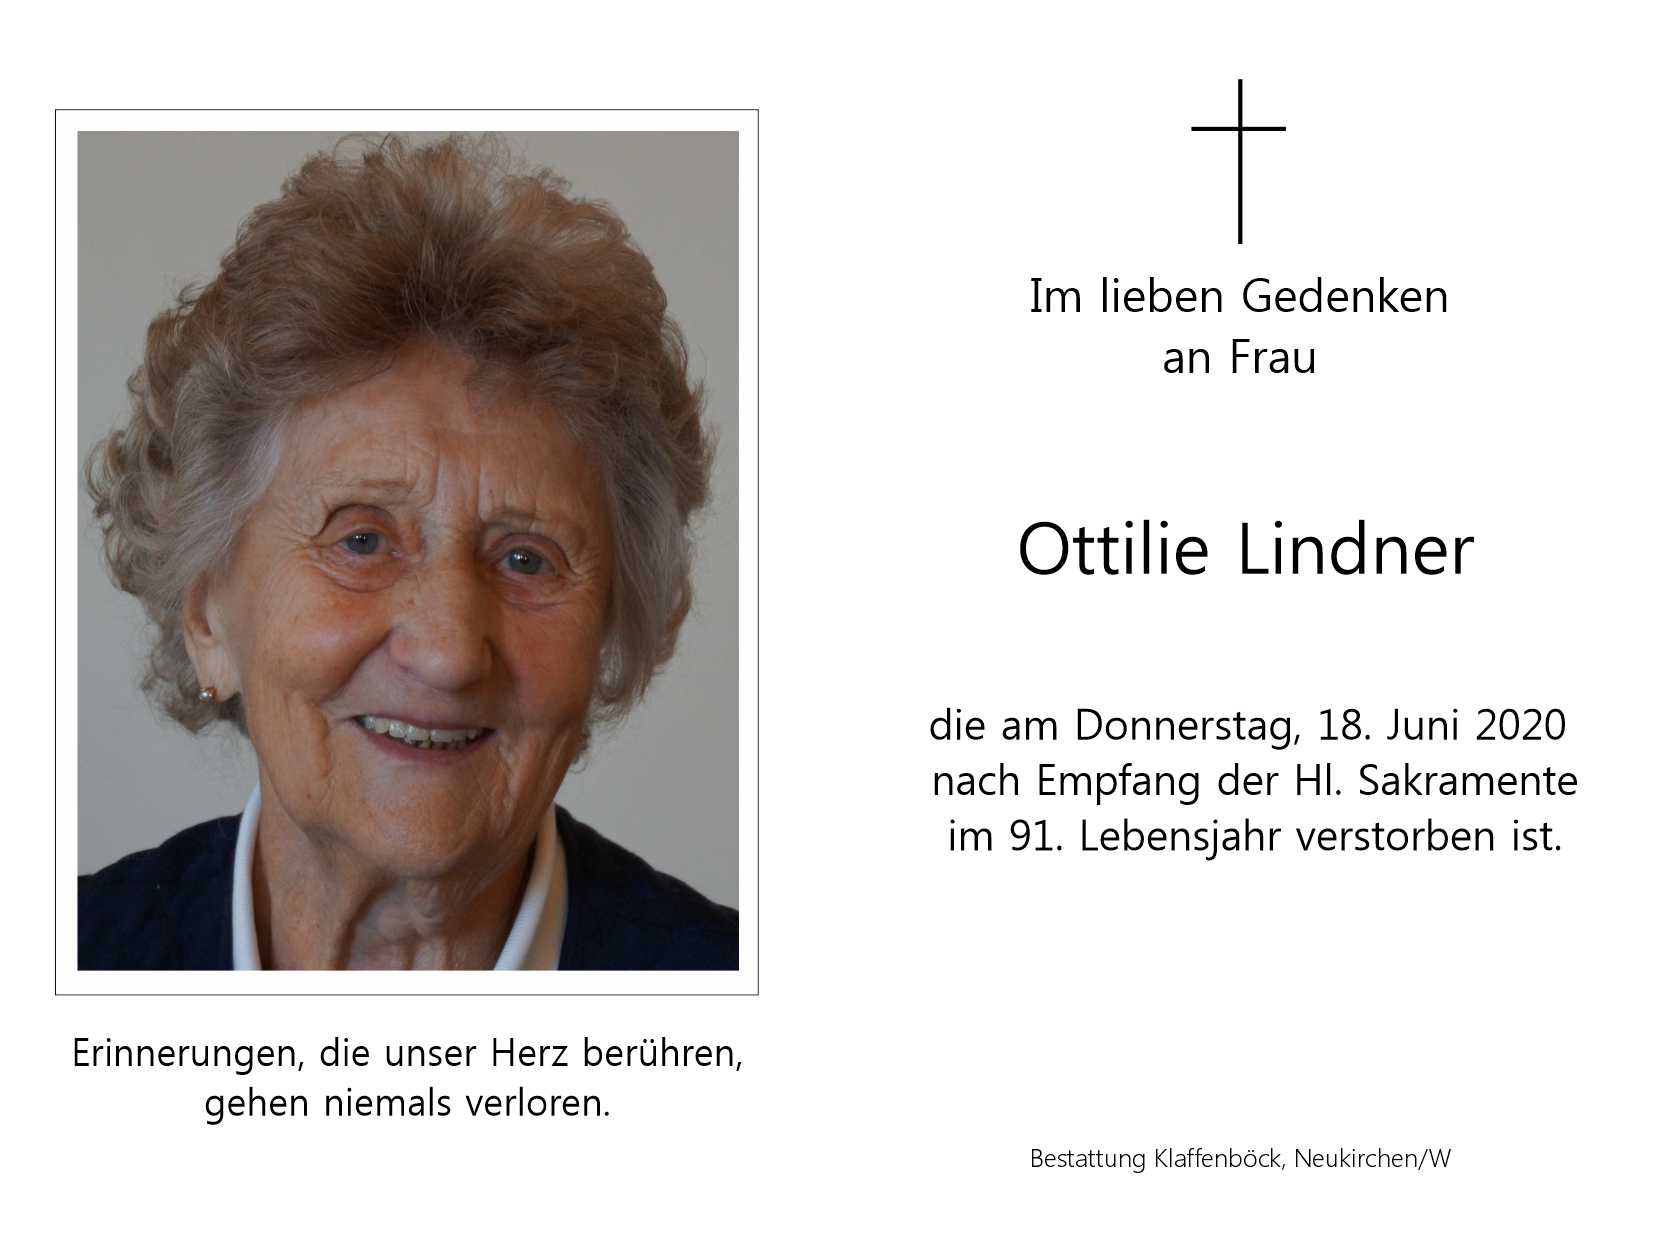 Ottilie  Lindner